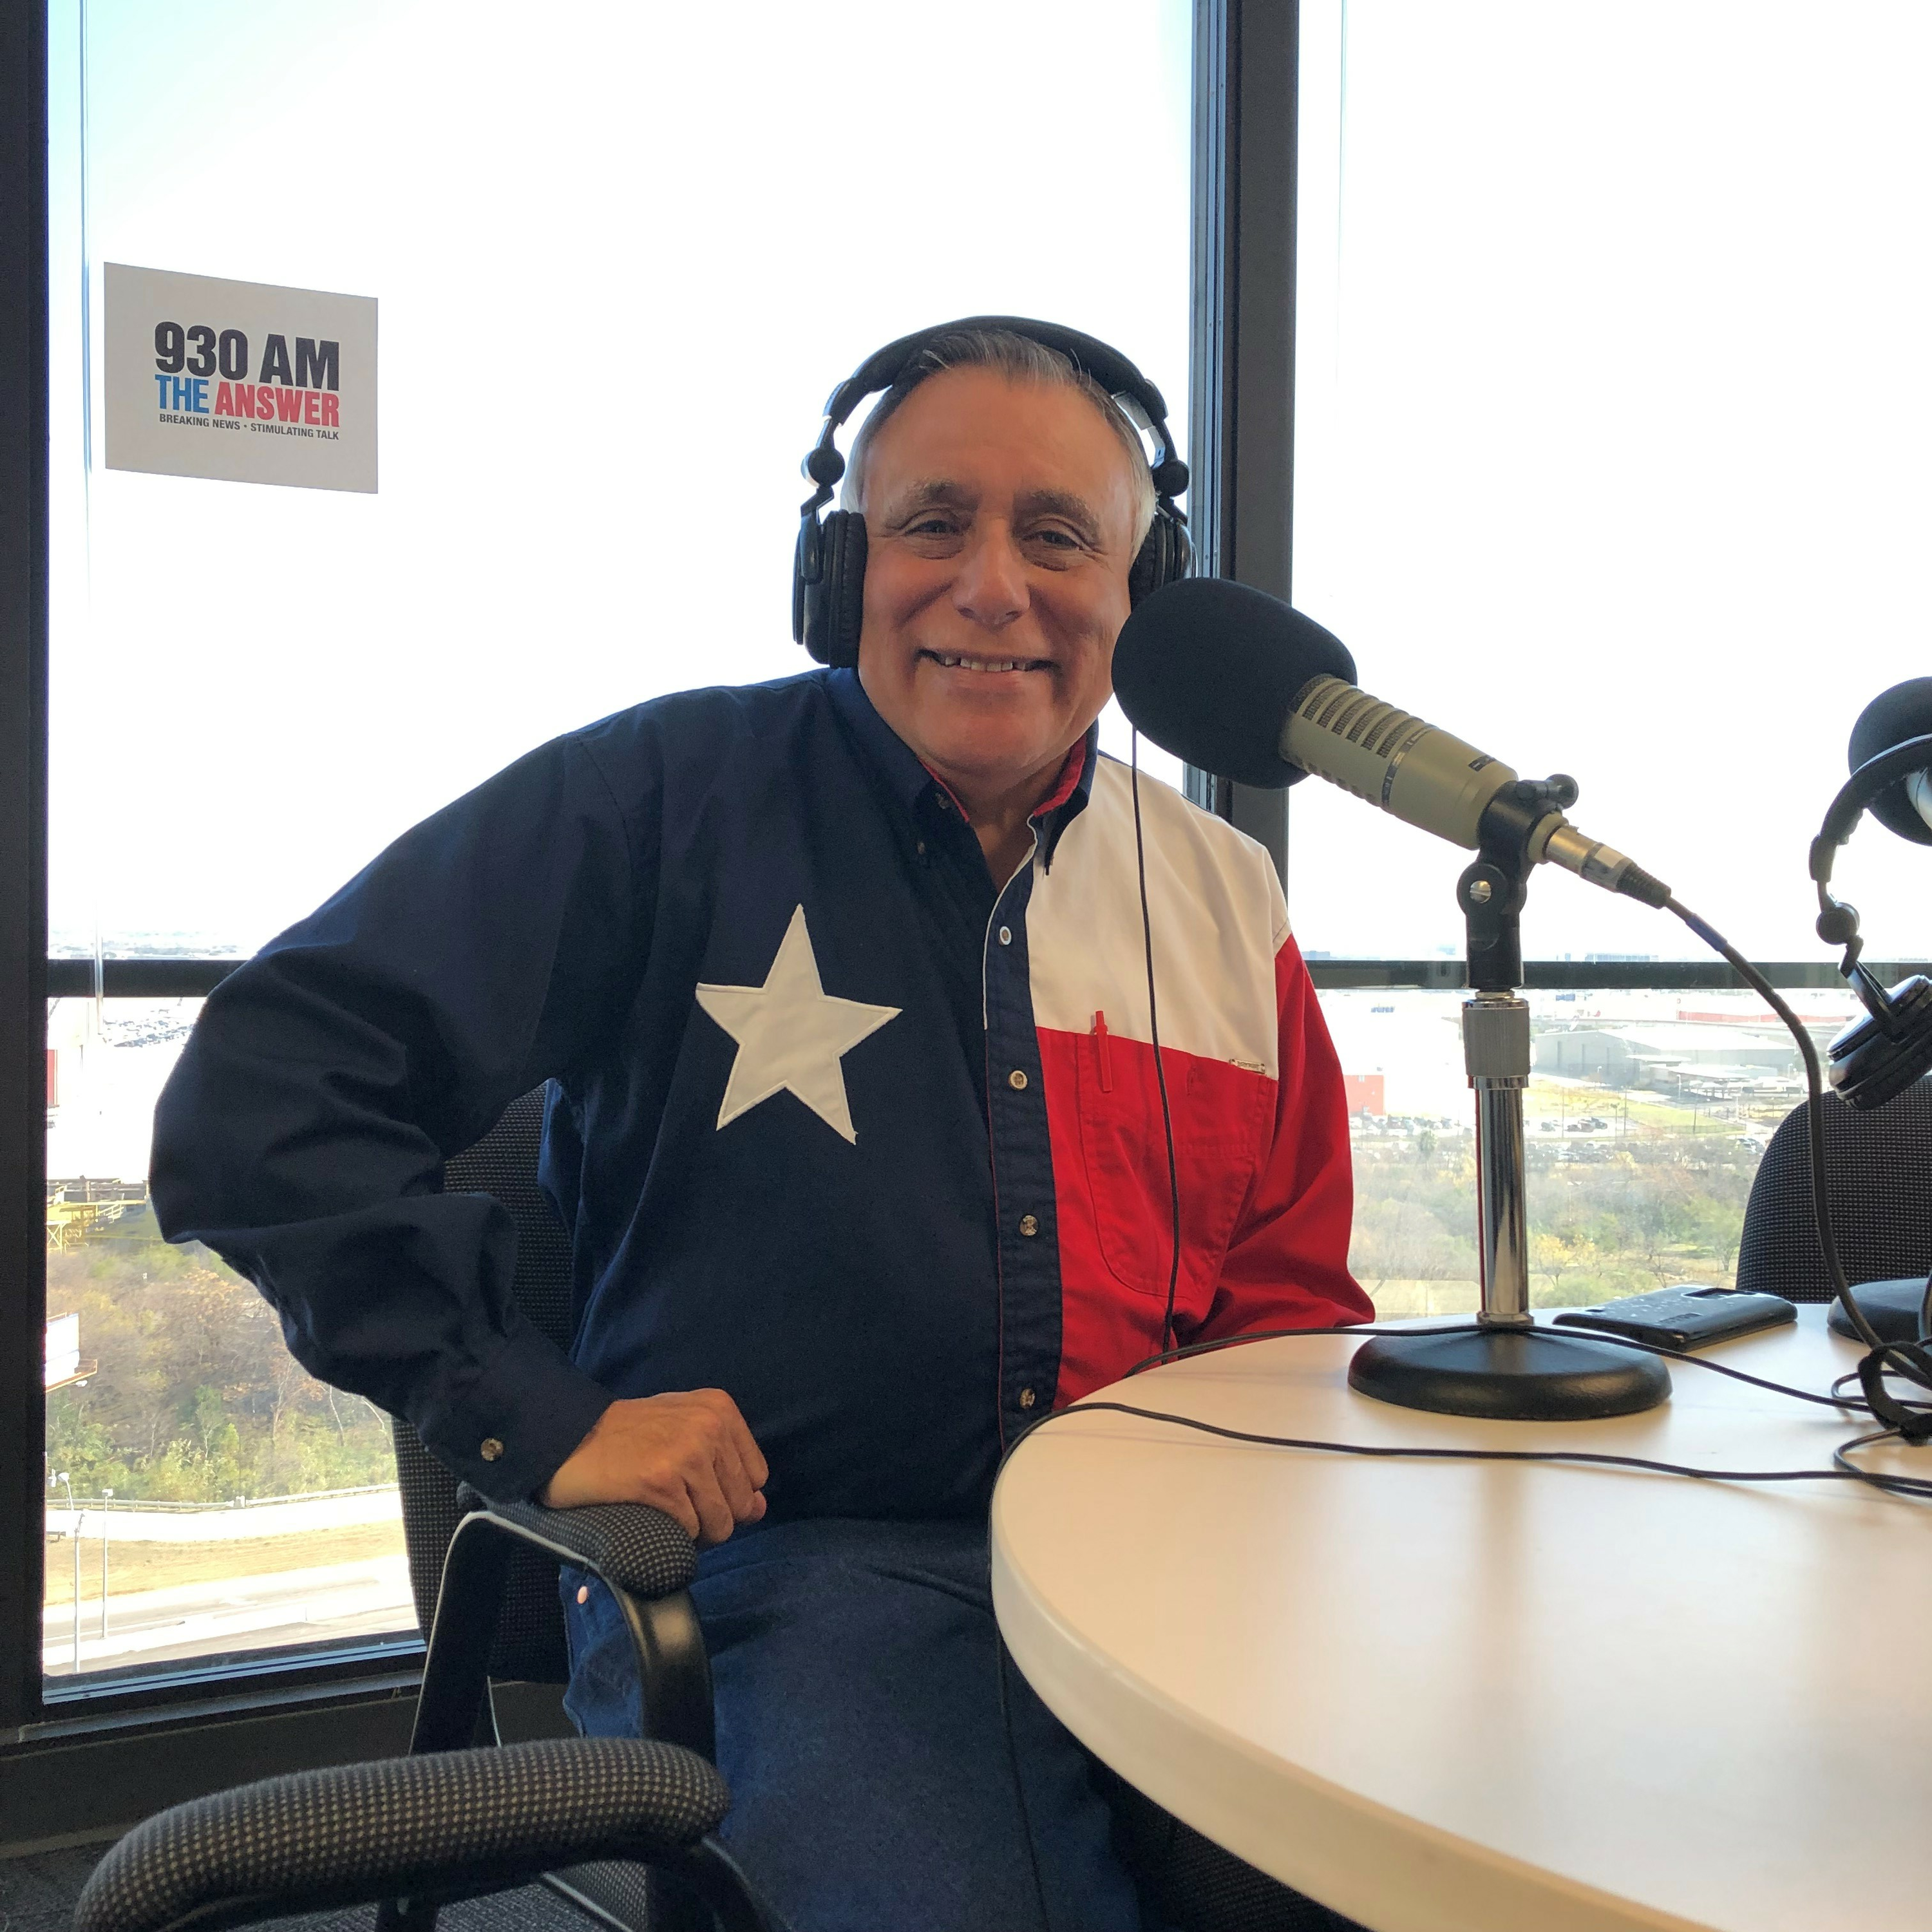 11-18-23 The El Conservador Radio with George Rodriguez